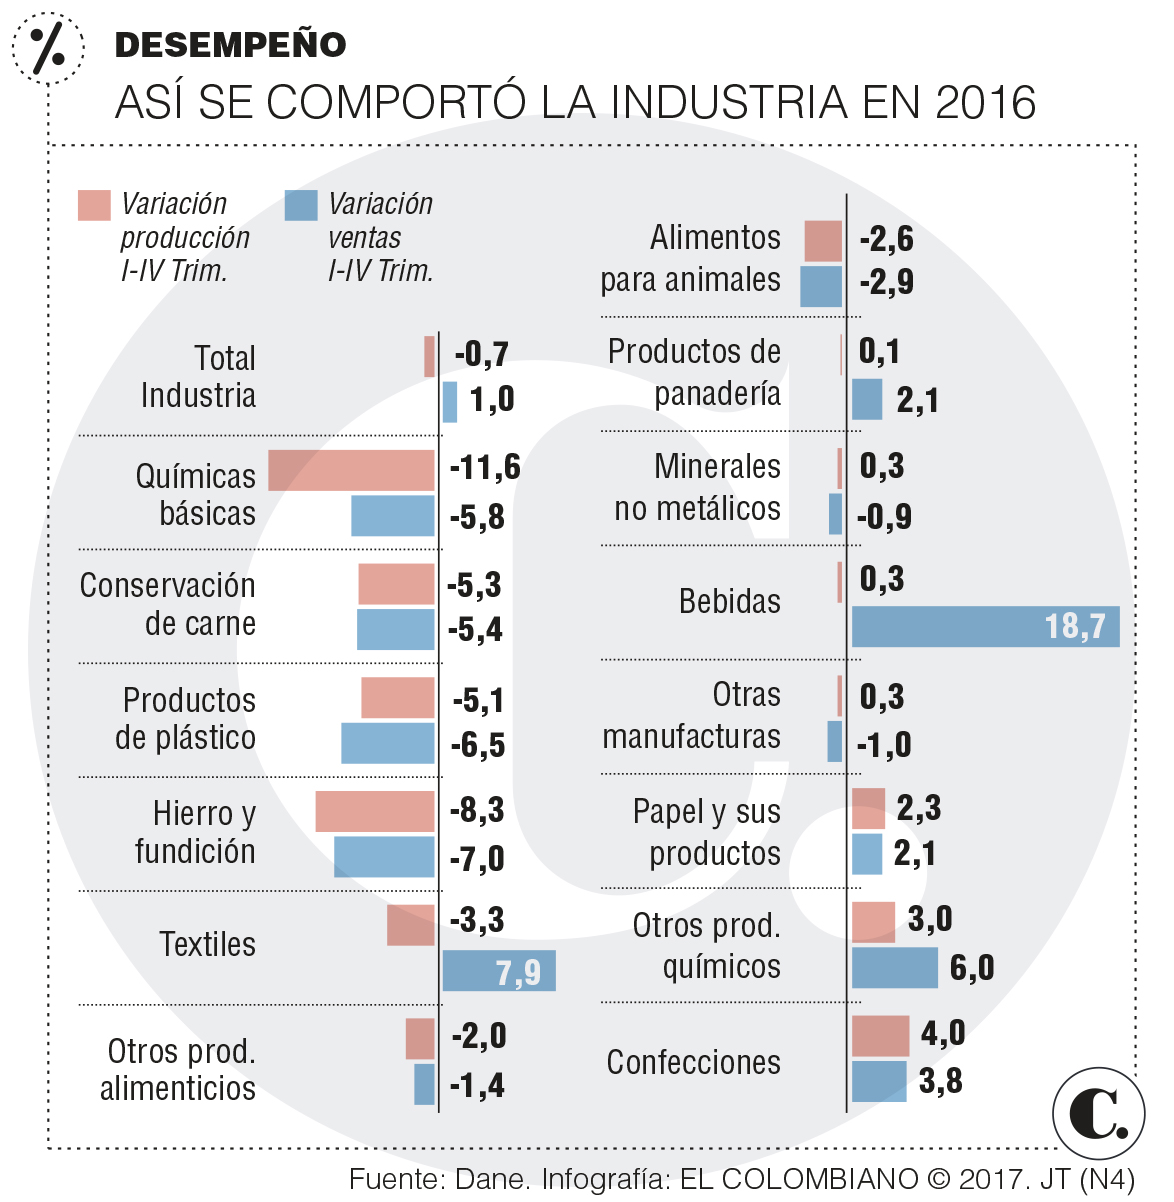 Química rajó desempeño de industria paisa en 2016 